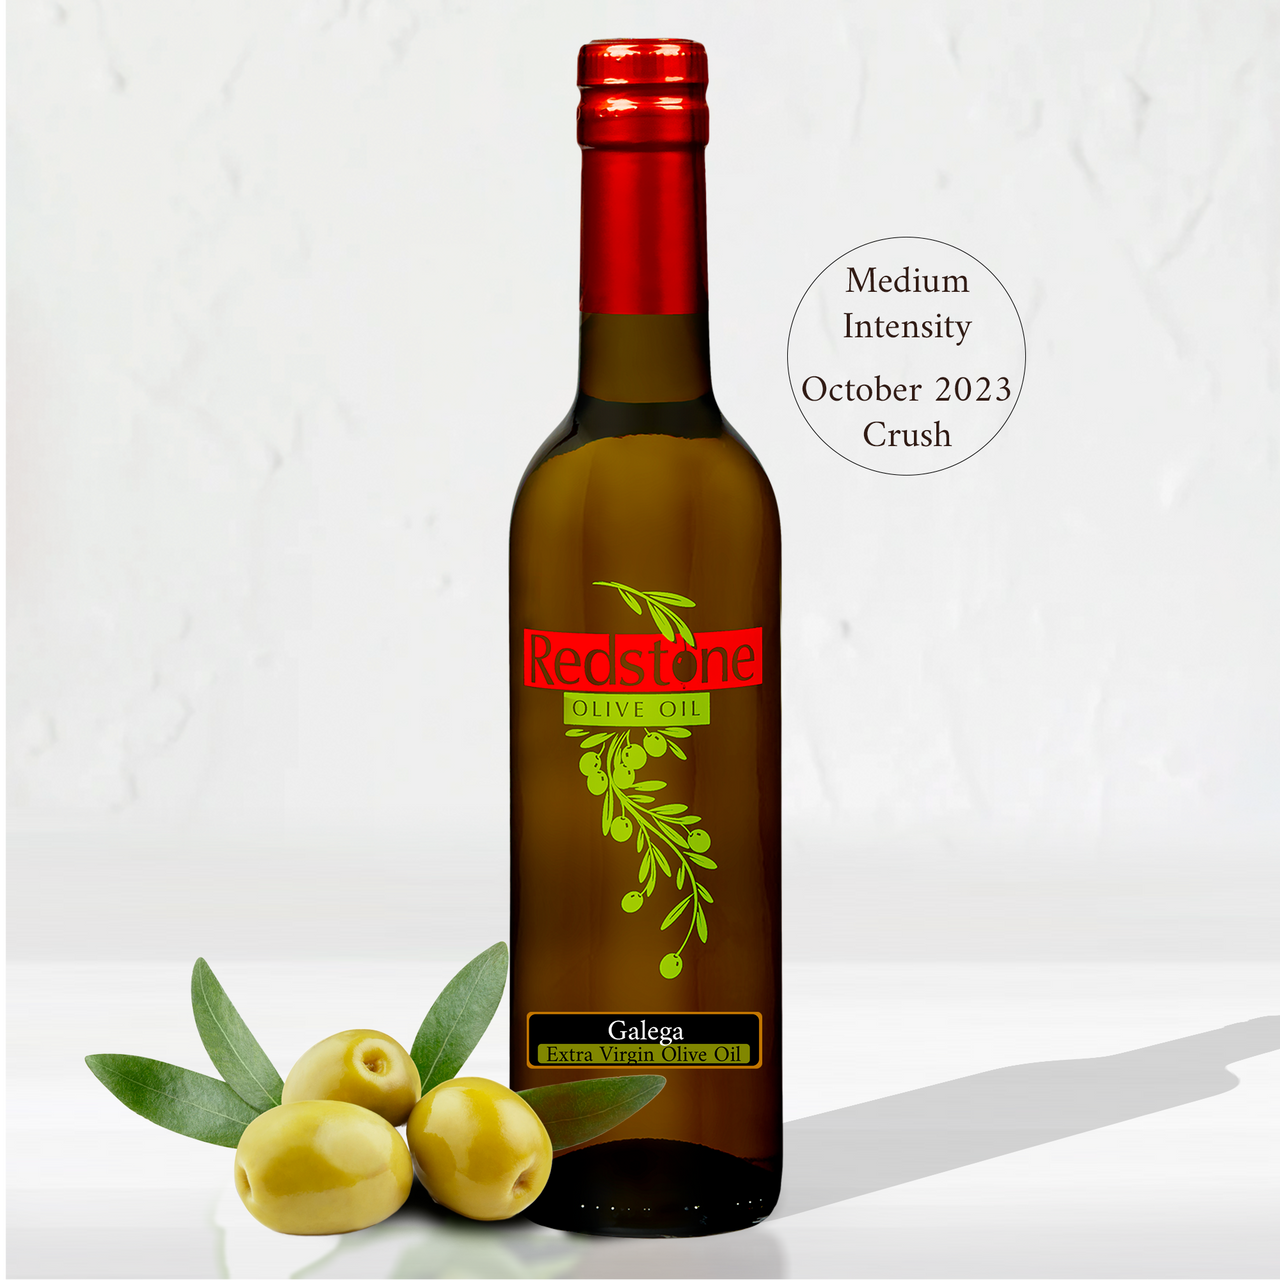 Grande Reserve Olive Oil